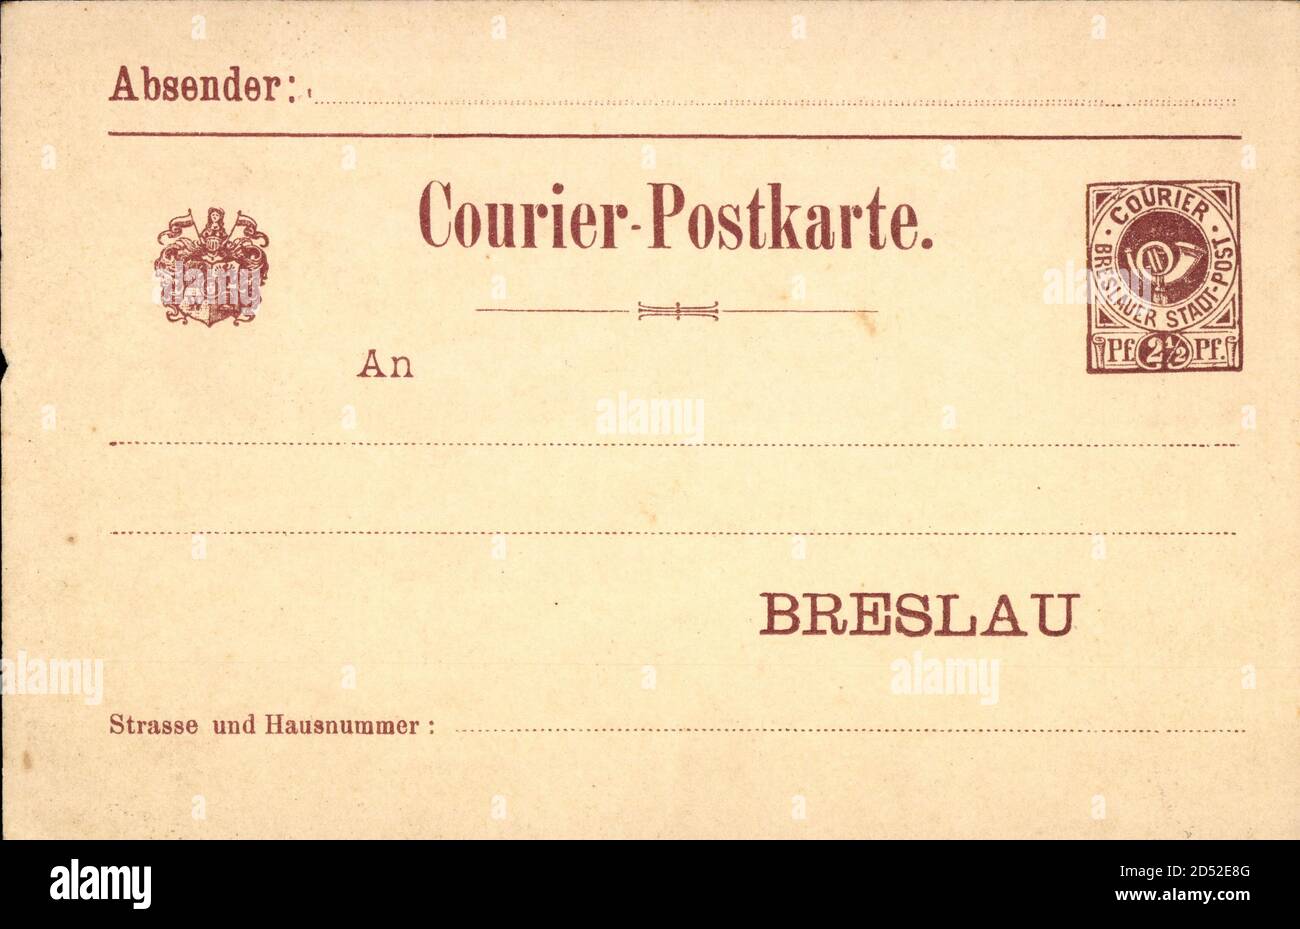 Ganzsachen Private Stadtpost, Breslau, Courier Postkarte, 2 1/2 Pfennig | usage worldwide Stock Photo